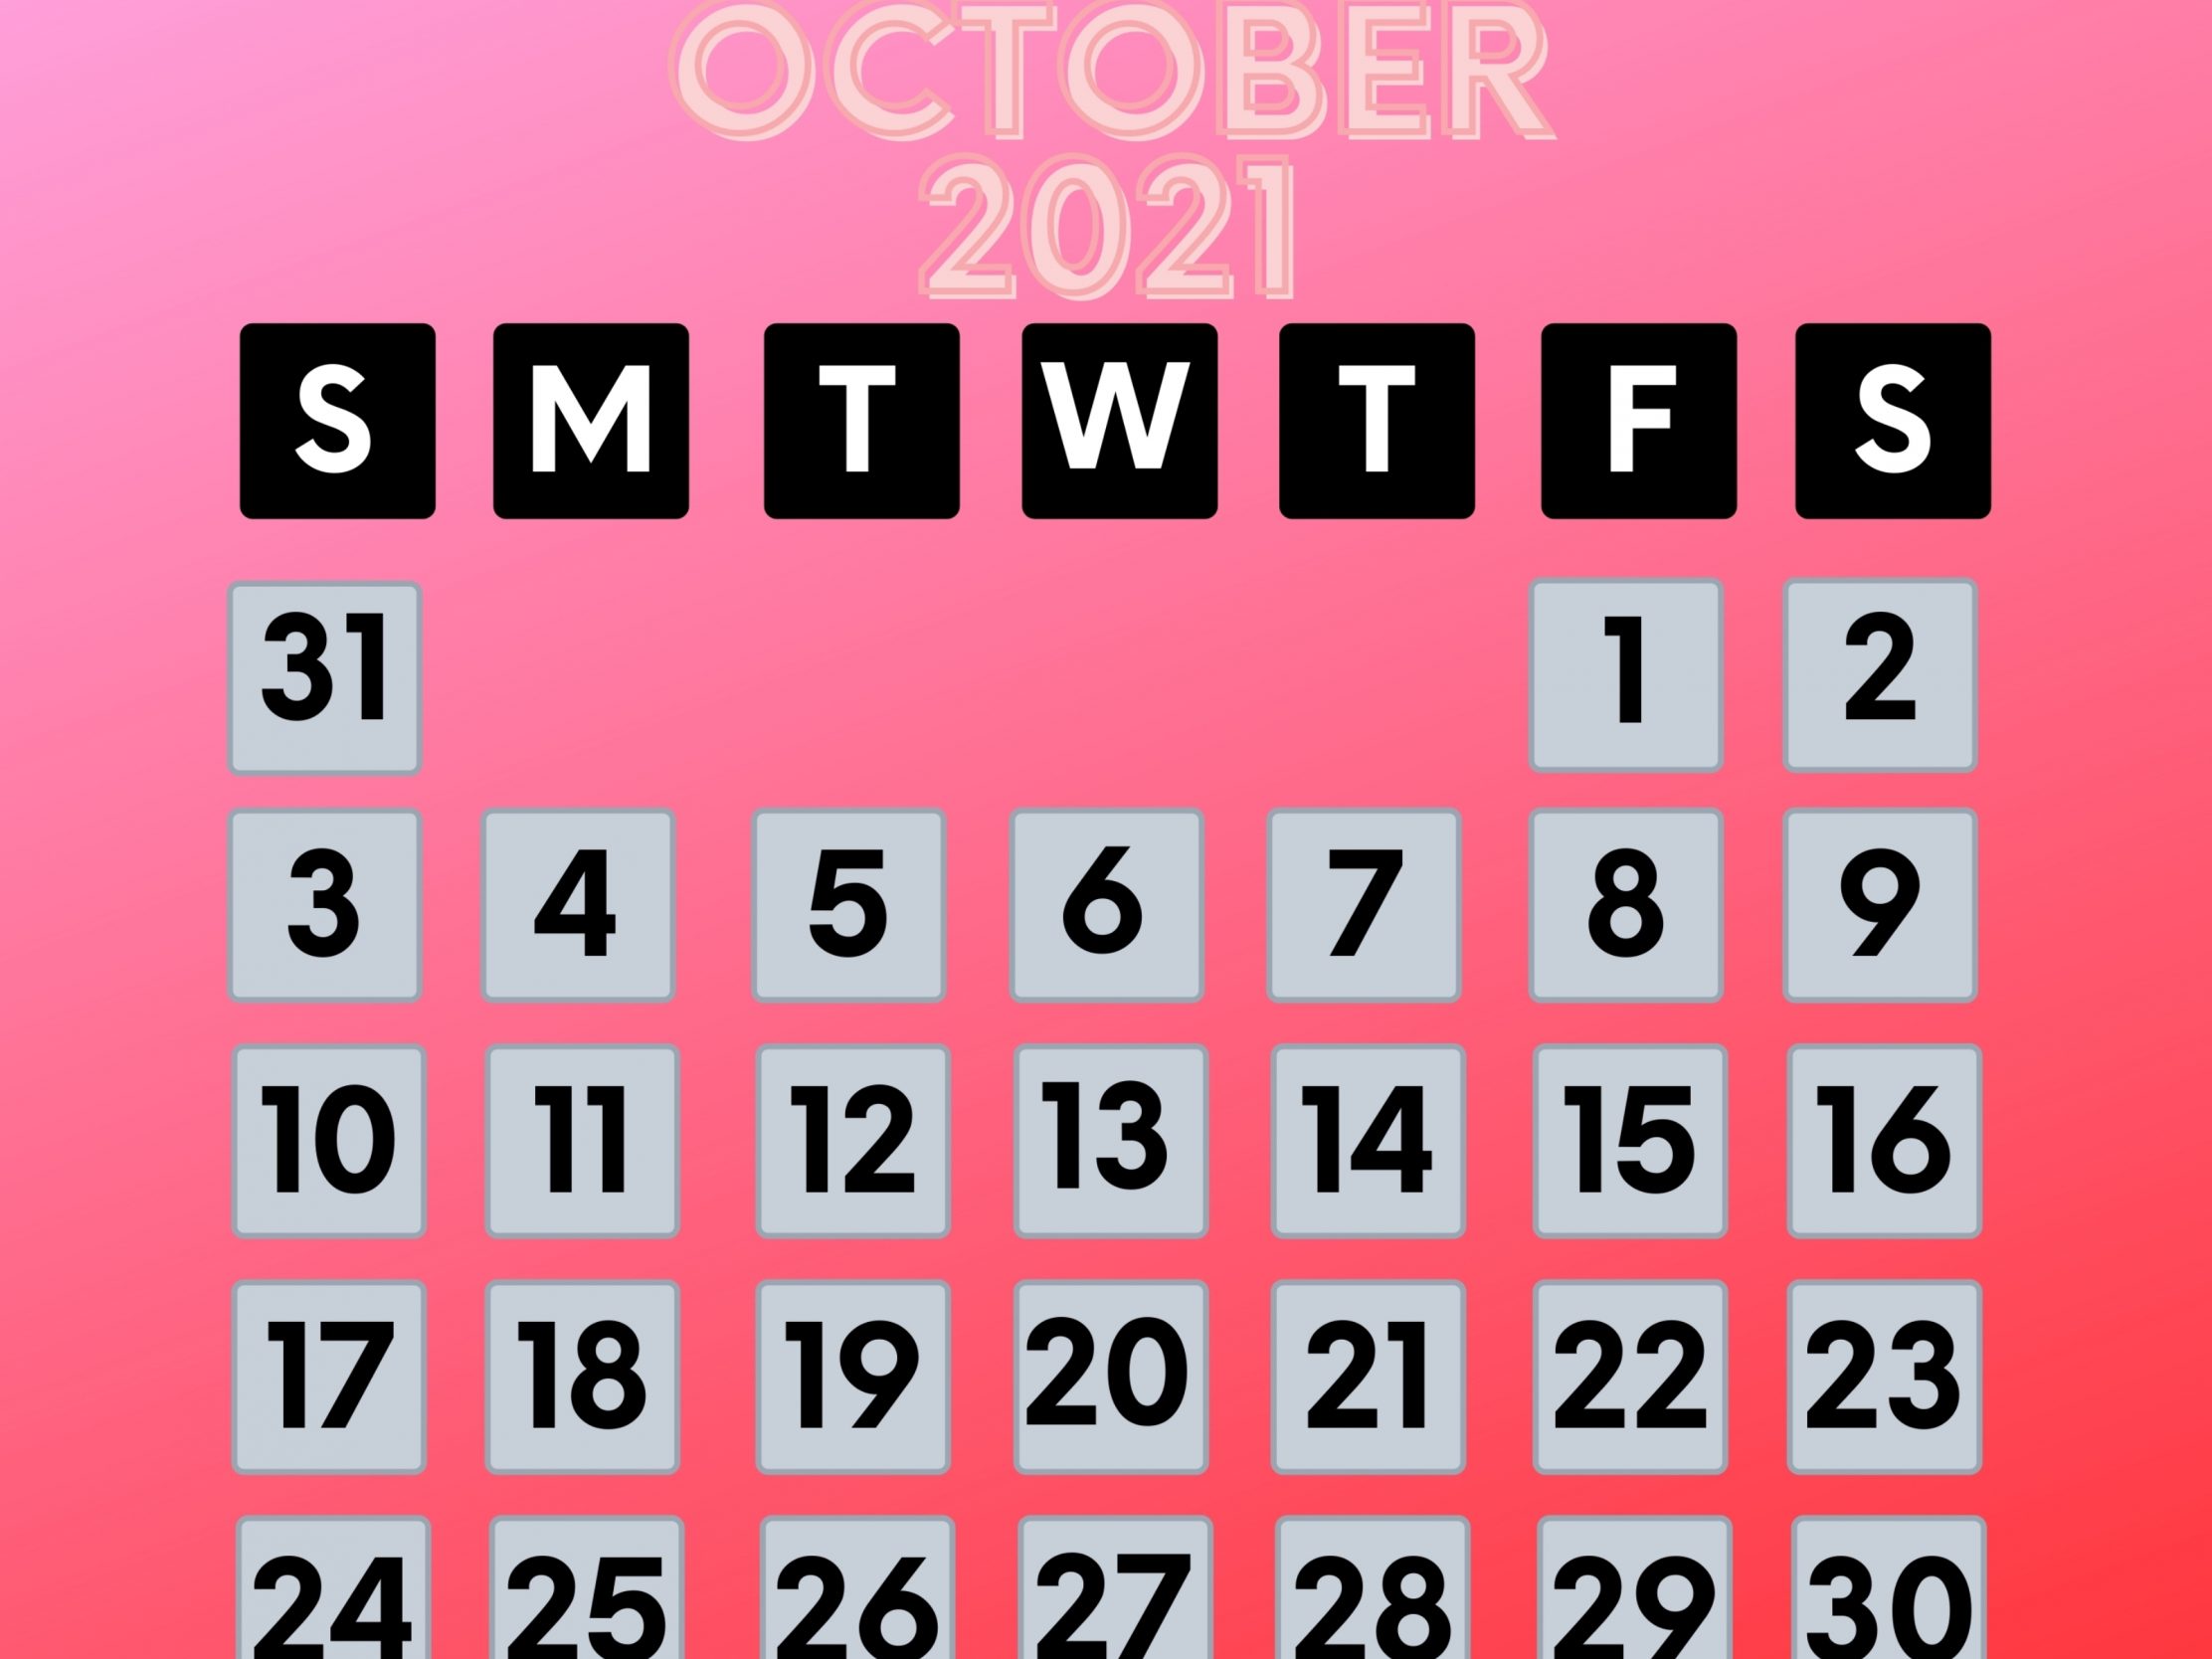 2224x1668 iPad Pro wallpapers October 2021 Calendar iPad Wallpaper 2224x1668 pixels resolution